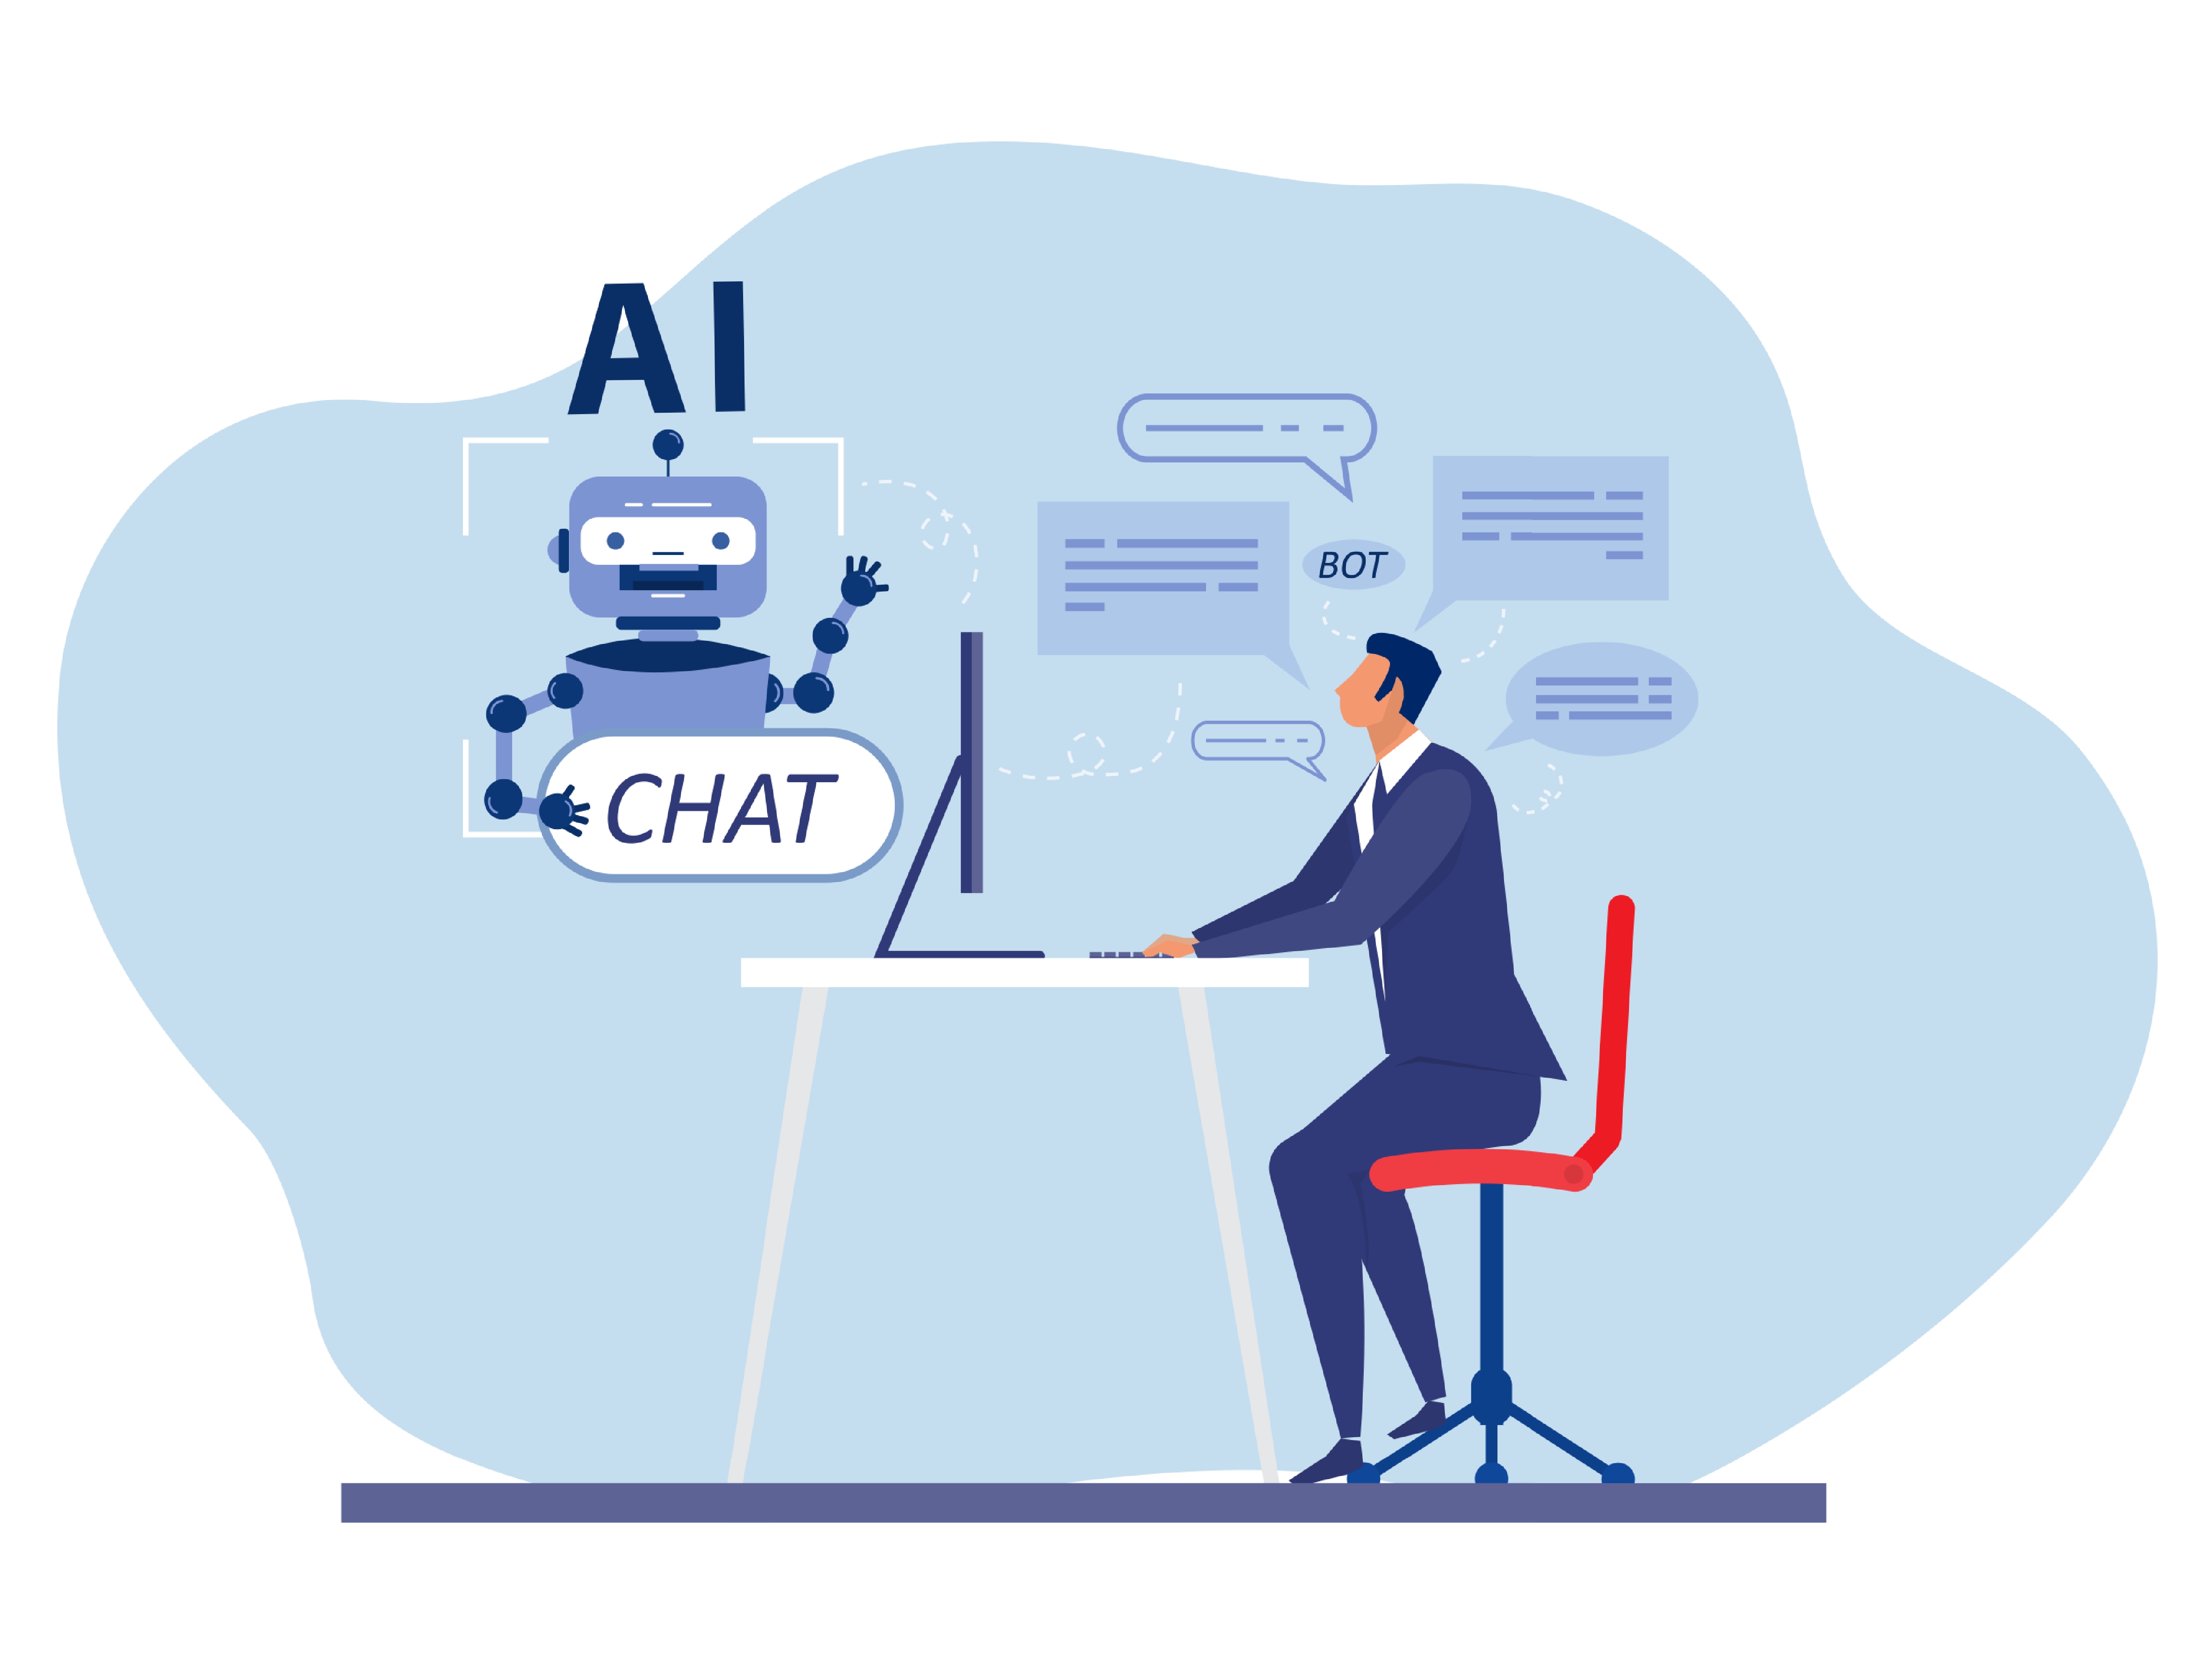 En illustrasjon av en person som chatter med en AI chatbot på datamaskinen sin